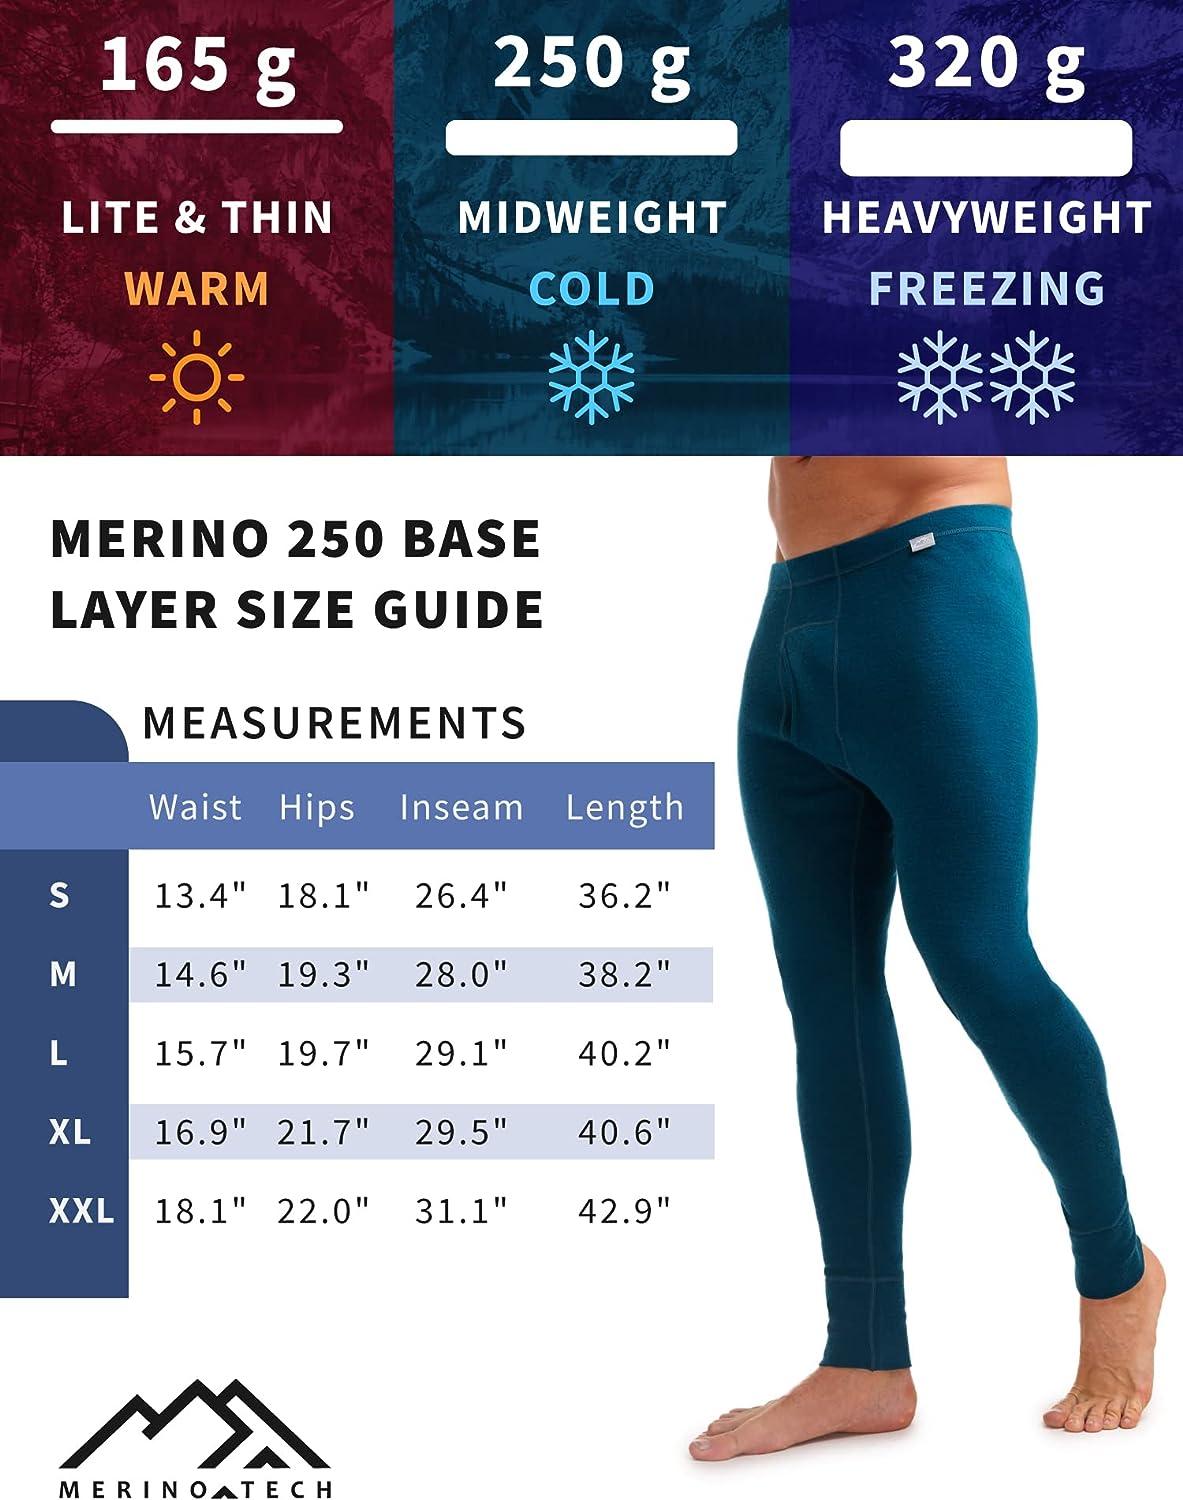  Merinotech Merino Wool Base Layer Women Set - Lightweight Merino  Wool Thermal Underwear For Women Top And Bottom